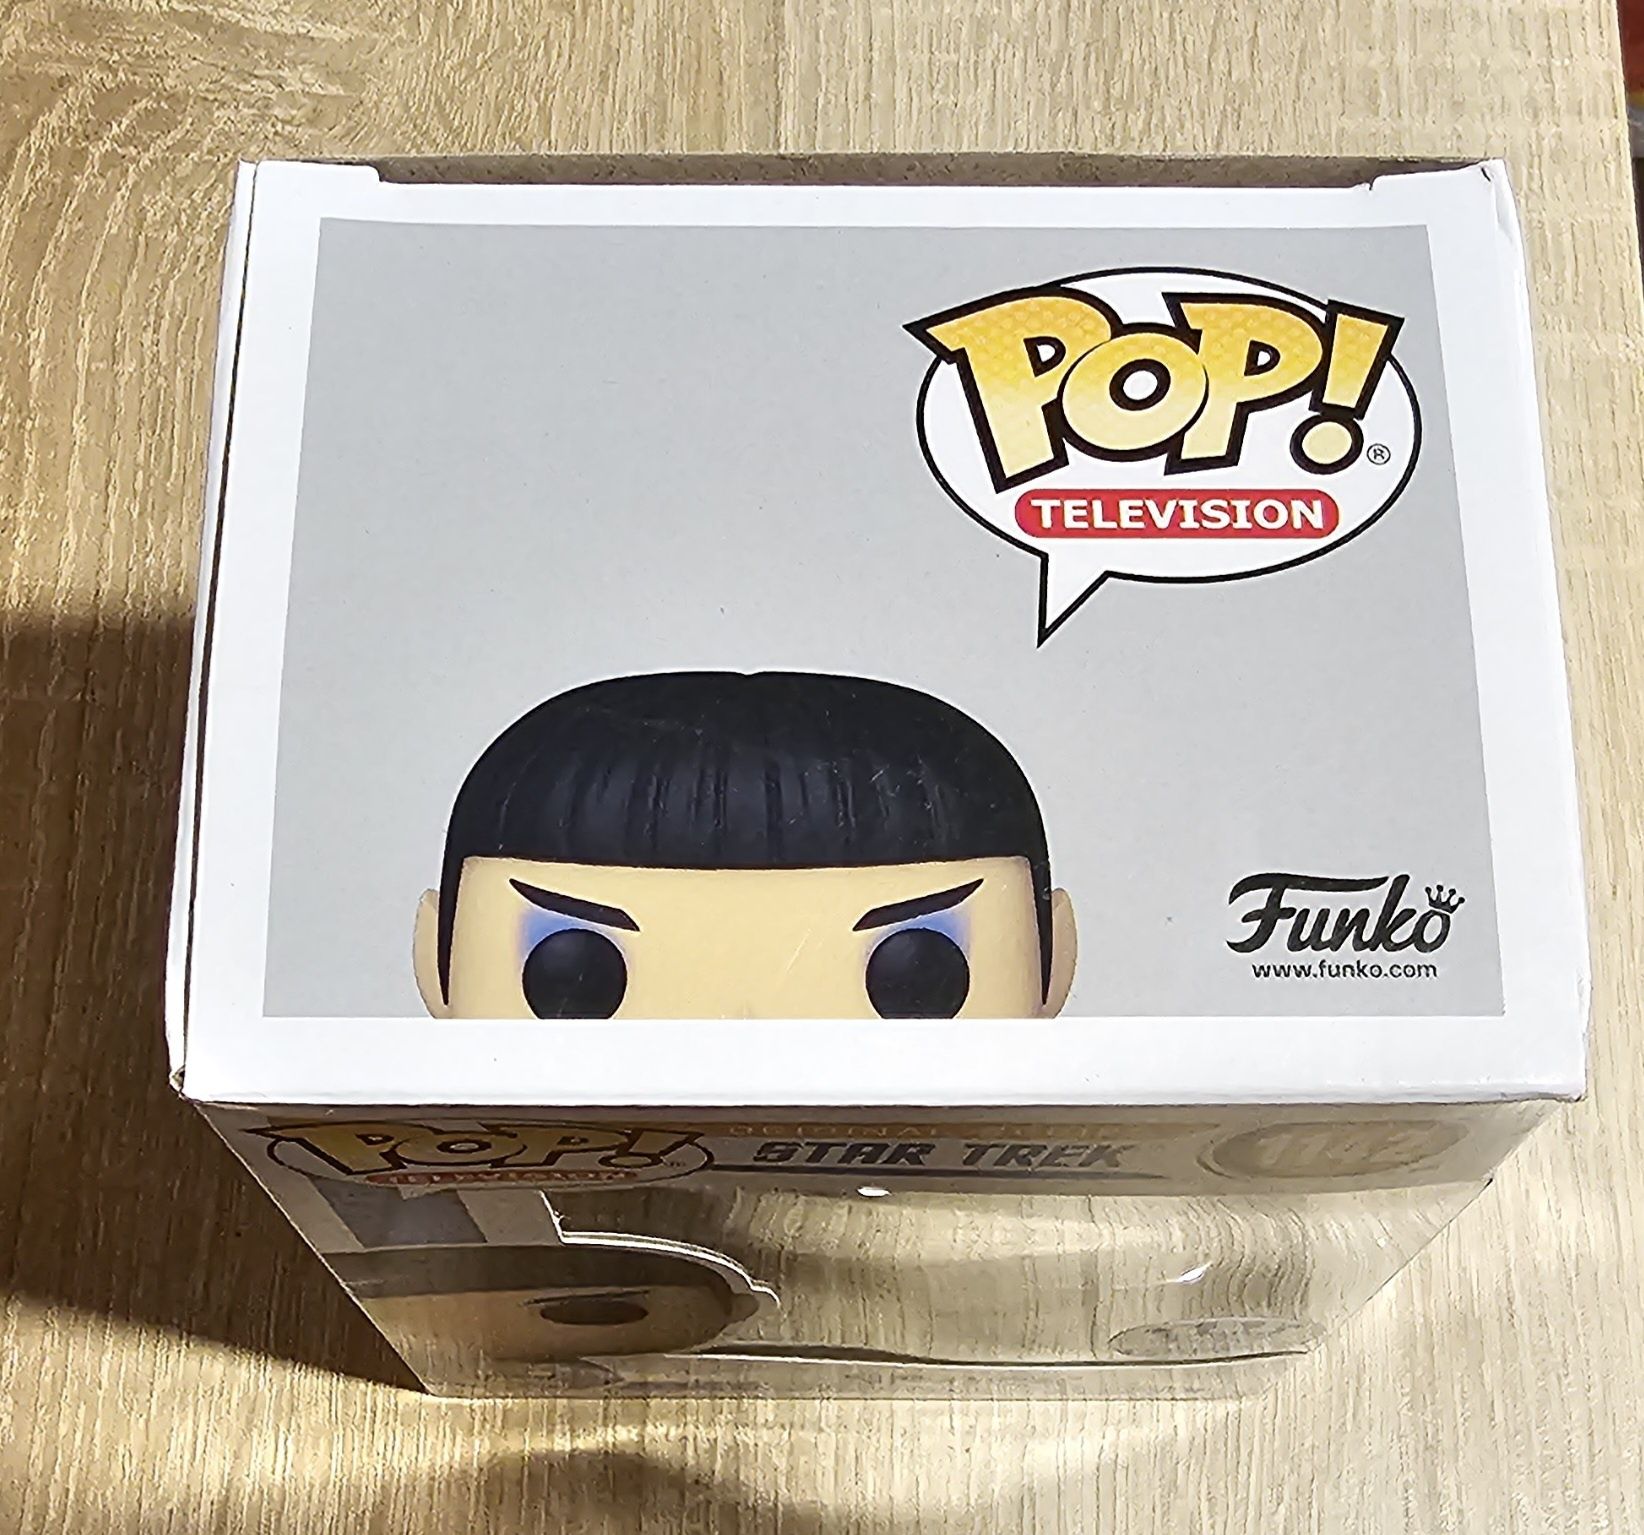 Figurka Funko Pop, Spock, Star Trek